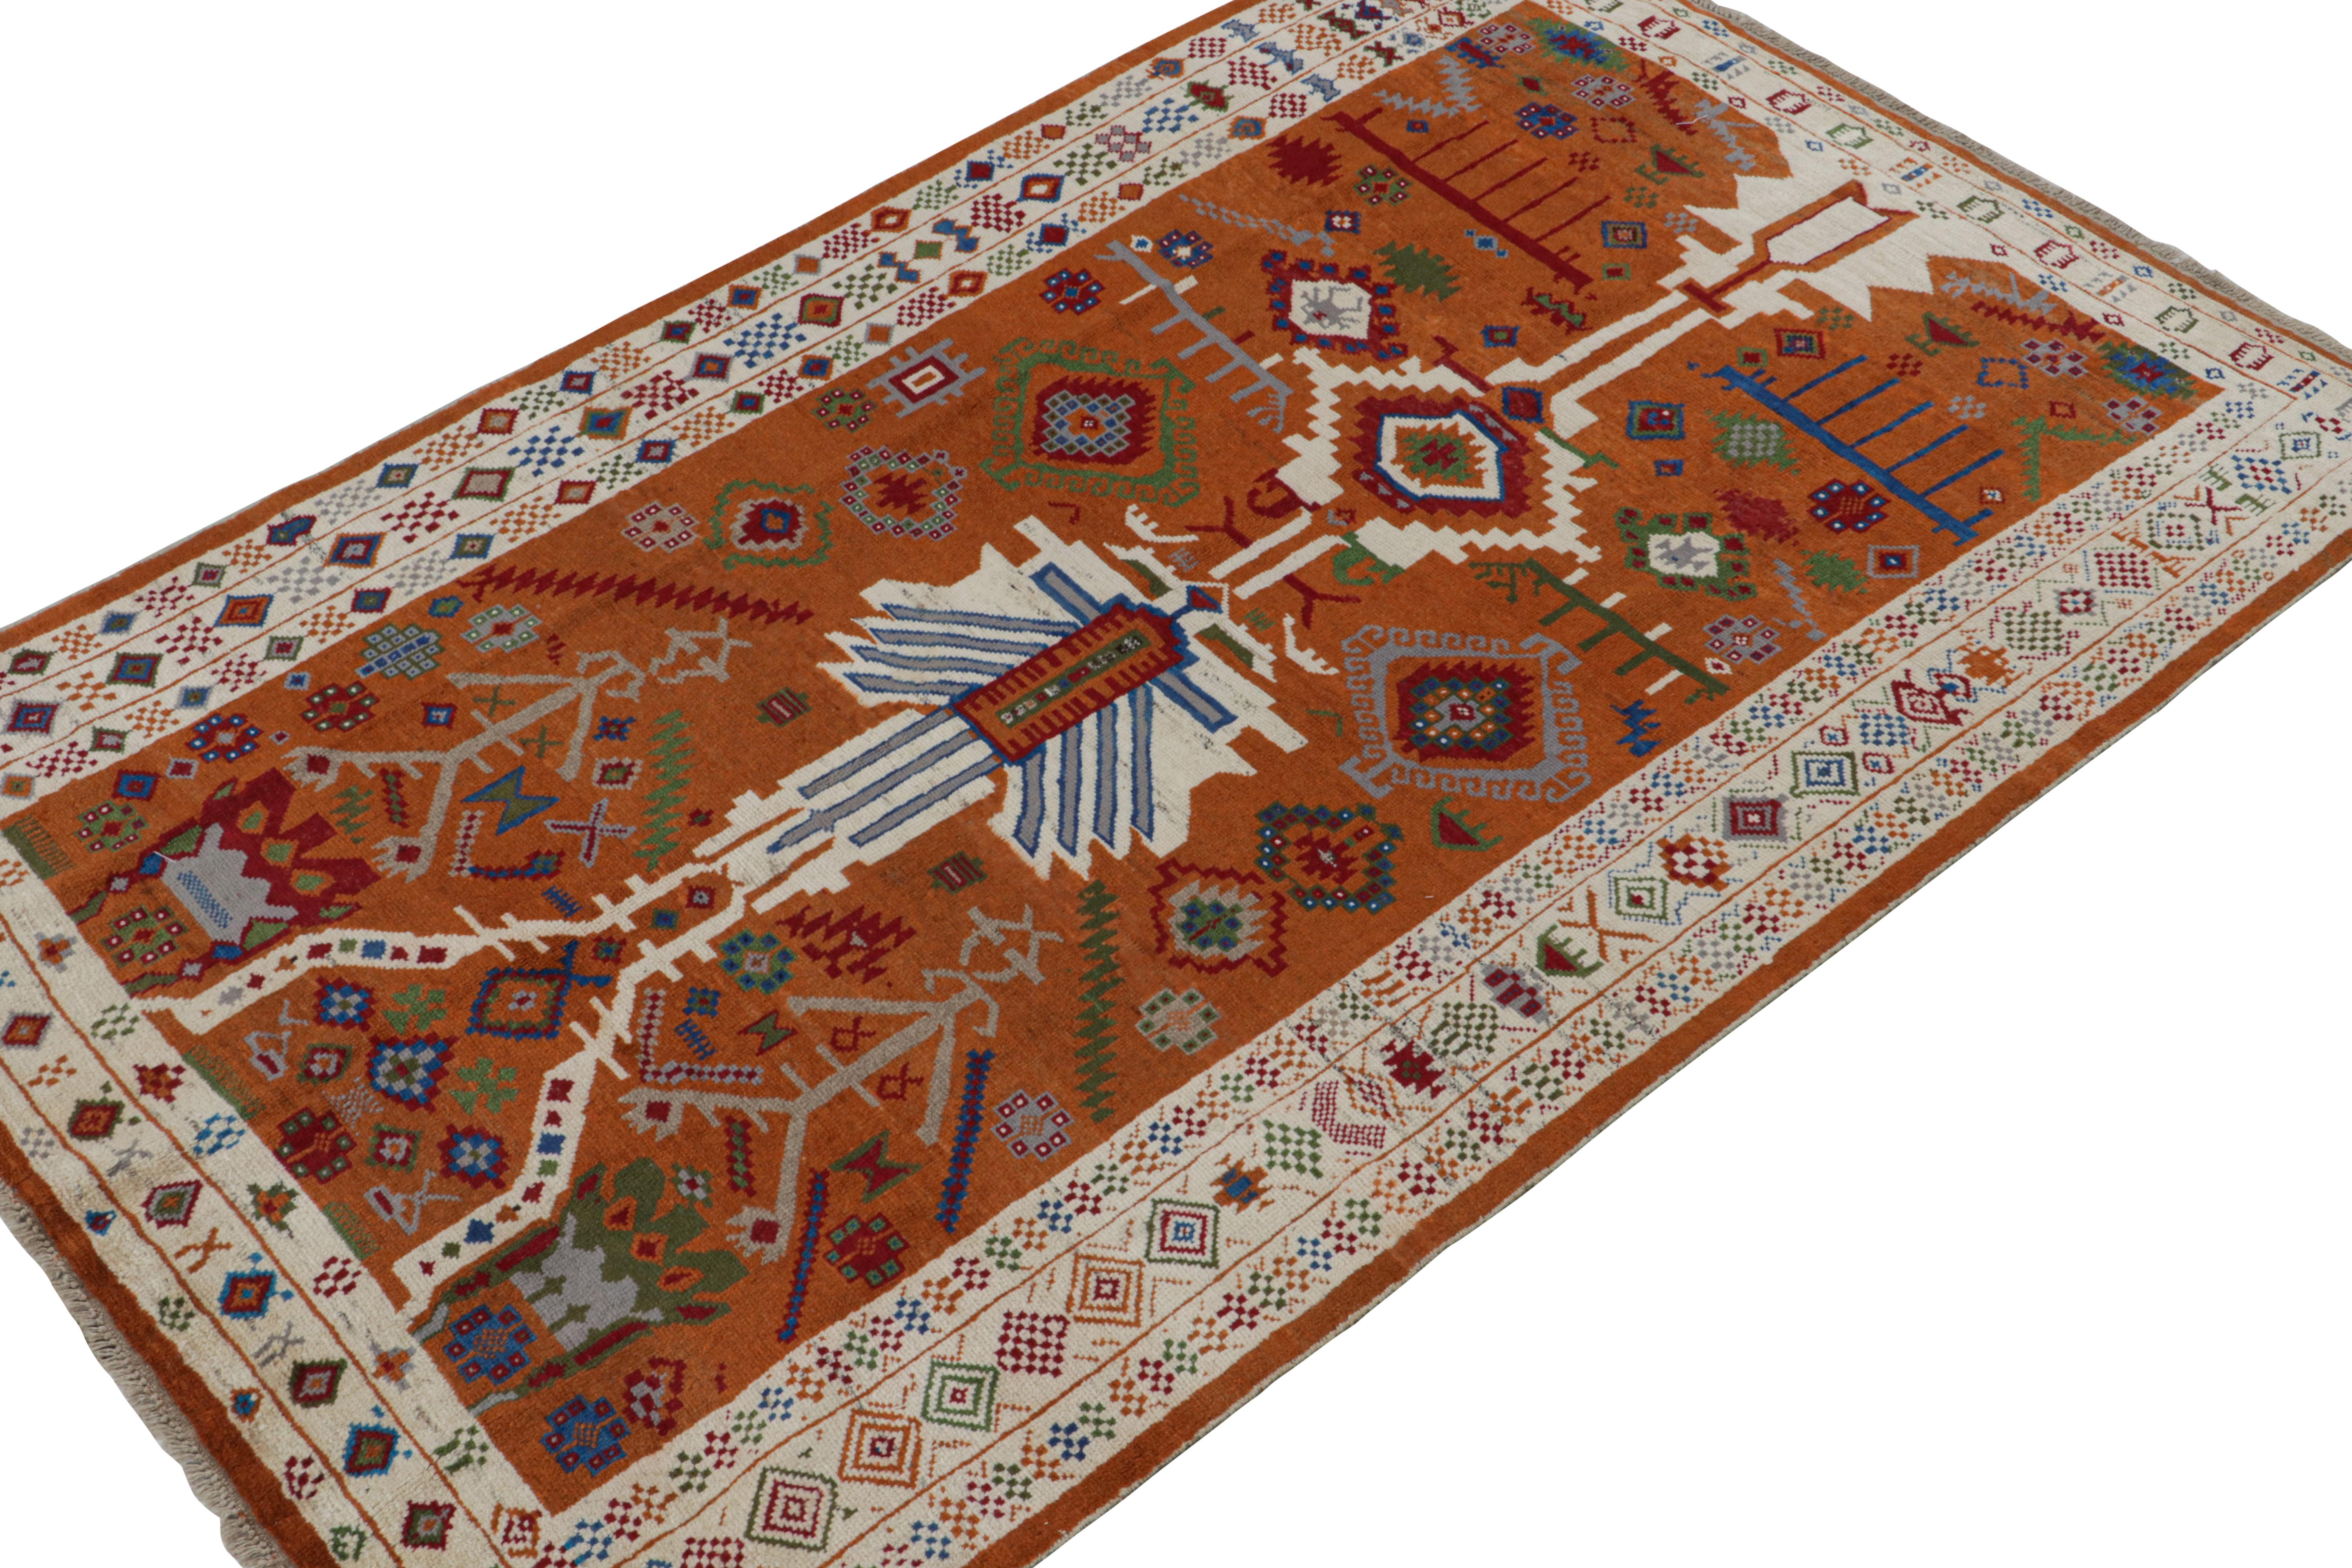 Noué à la main en laine, ce tapis 6x10 fait partie de la Collection Modern Classics de Rug & Kilim, inspirée des tapis Oushak anciens. 

Sur le Design :

Cette pièce bénéficie d'une approche audacieuse de ce style qui joue sur des motifs